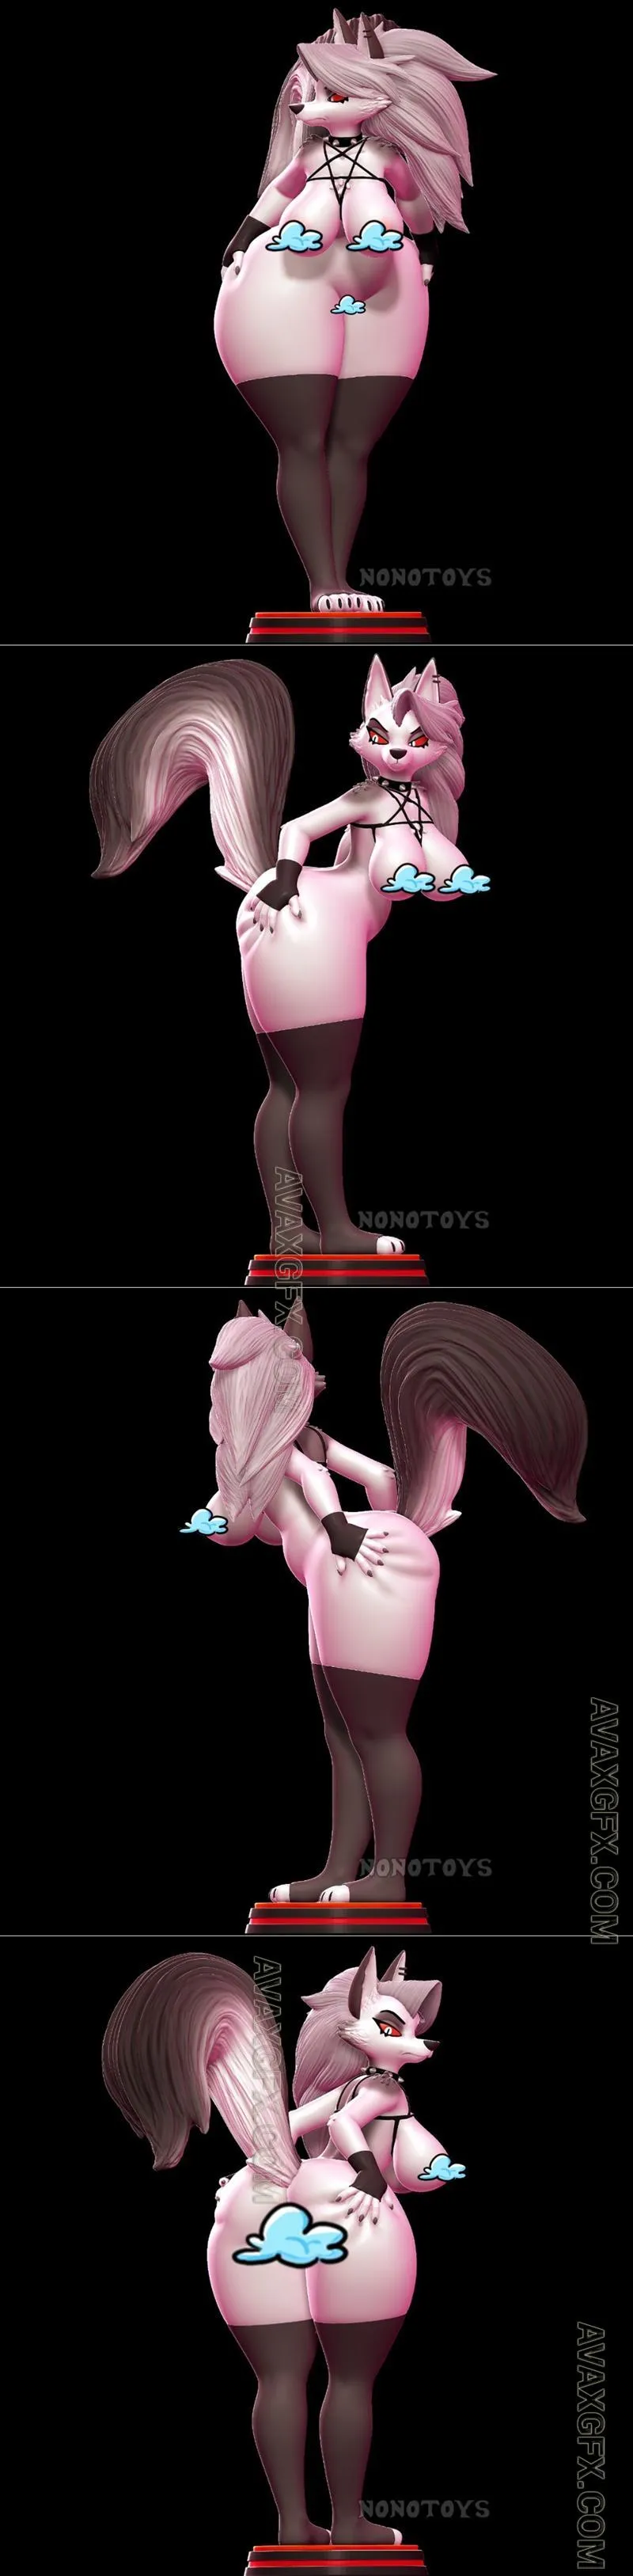 Loona Butt NSFW Version - STL 3D Model